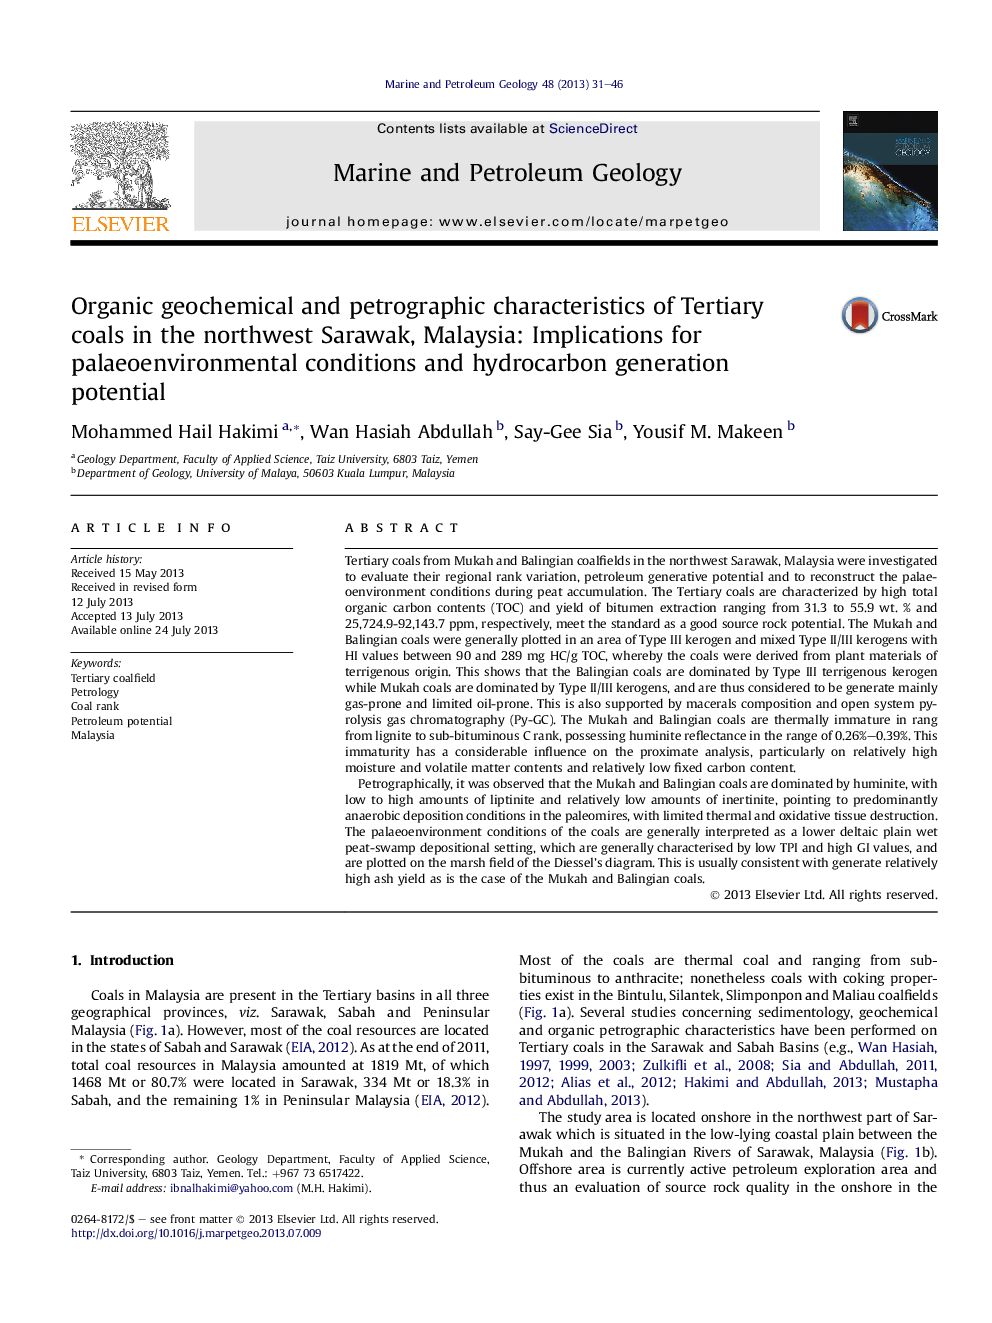 خصوصیات ژئوشیمیایی و پتروگرافی ارگانیک از ذغال سنگ ترتیب در شمال غربی ساراواک، مالزی: تاثیرات شرایط محیطی و پتانسیل تولید هیدروکربن 